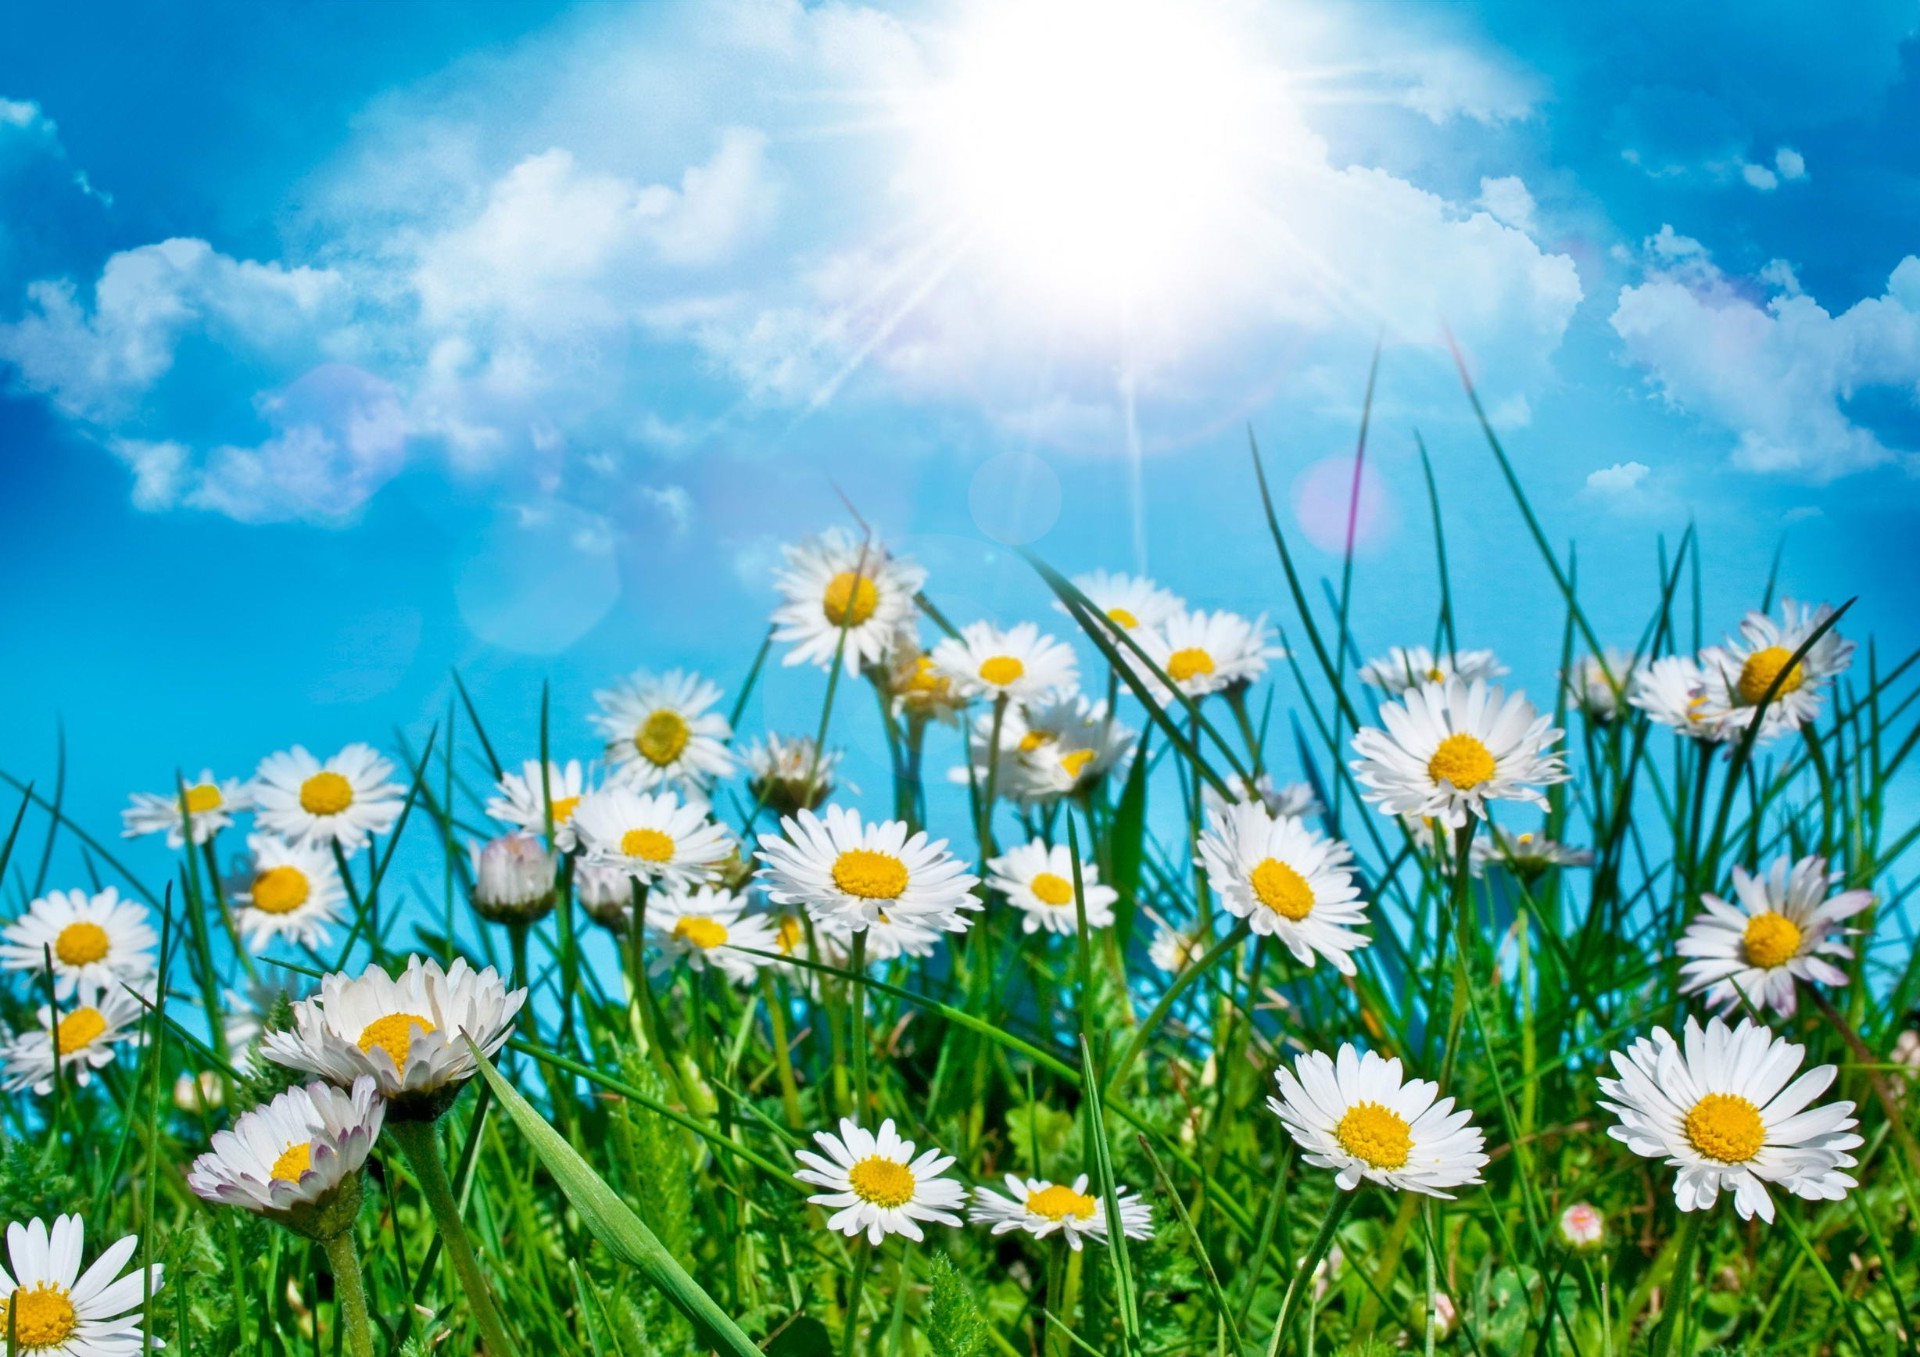 ромашки сенокос поле лето природа флора цветок трава сельских солнце сезон хорошую погоду яркий рост среды цветочные солнечный сад газон цвет